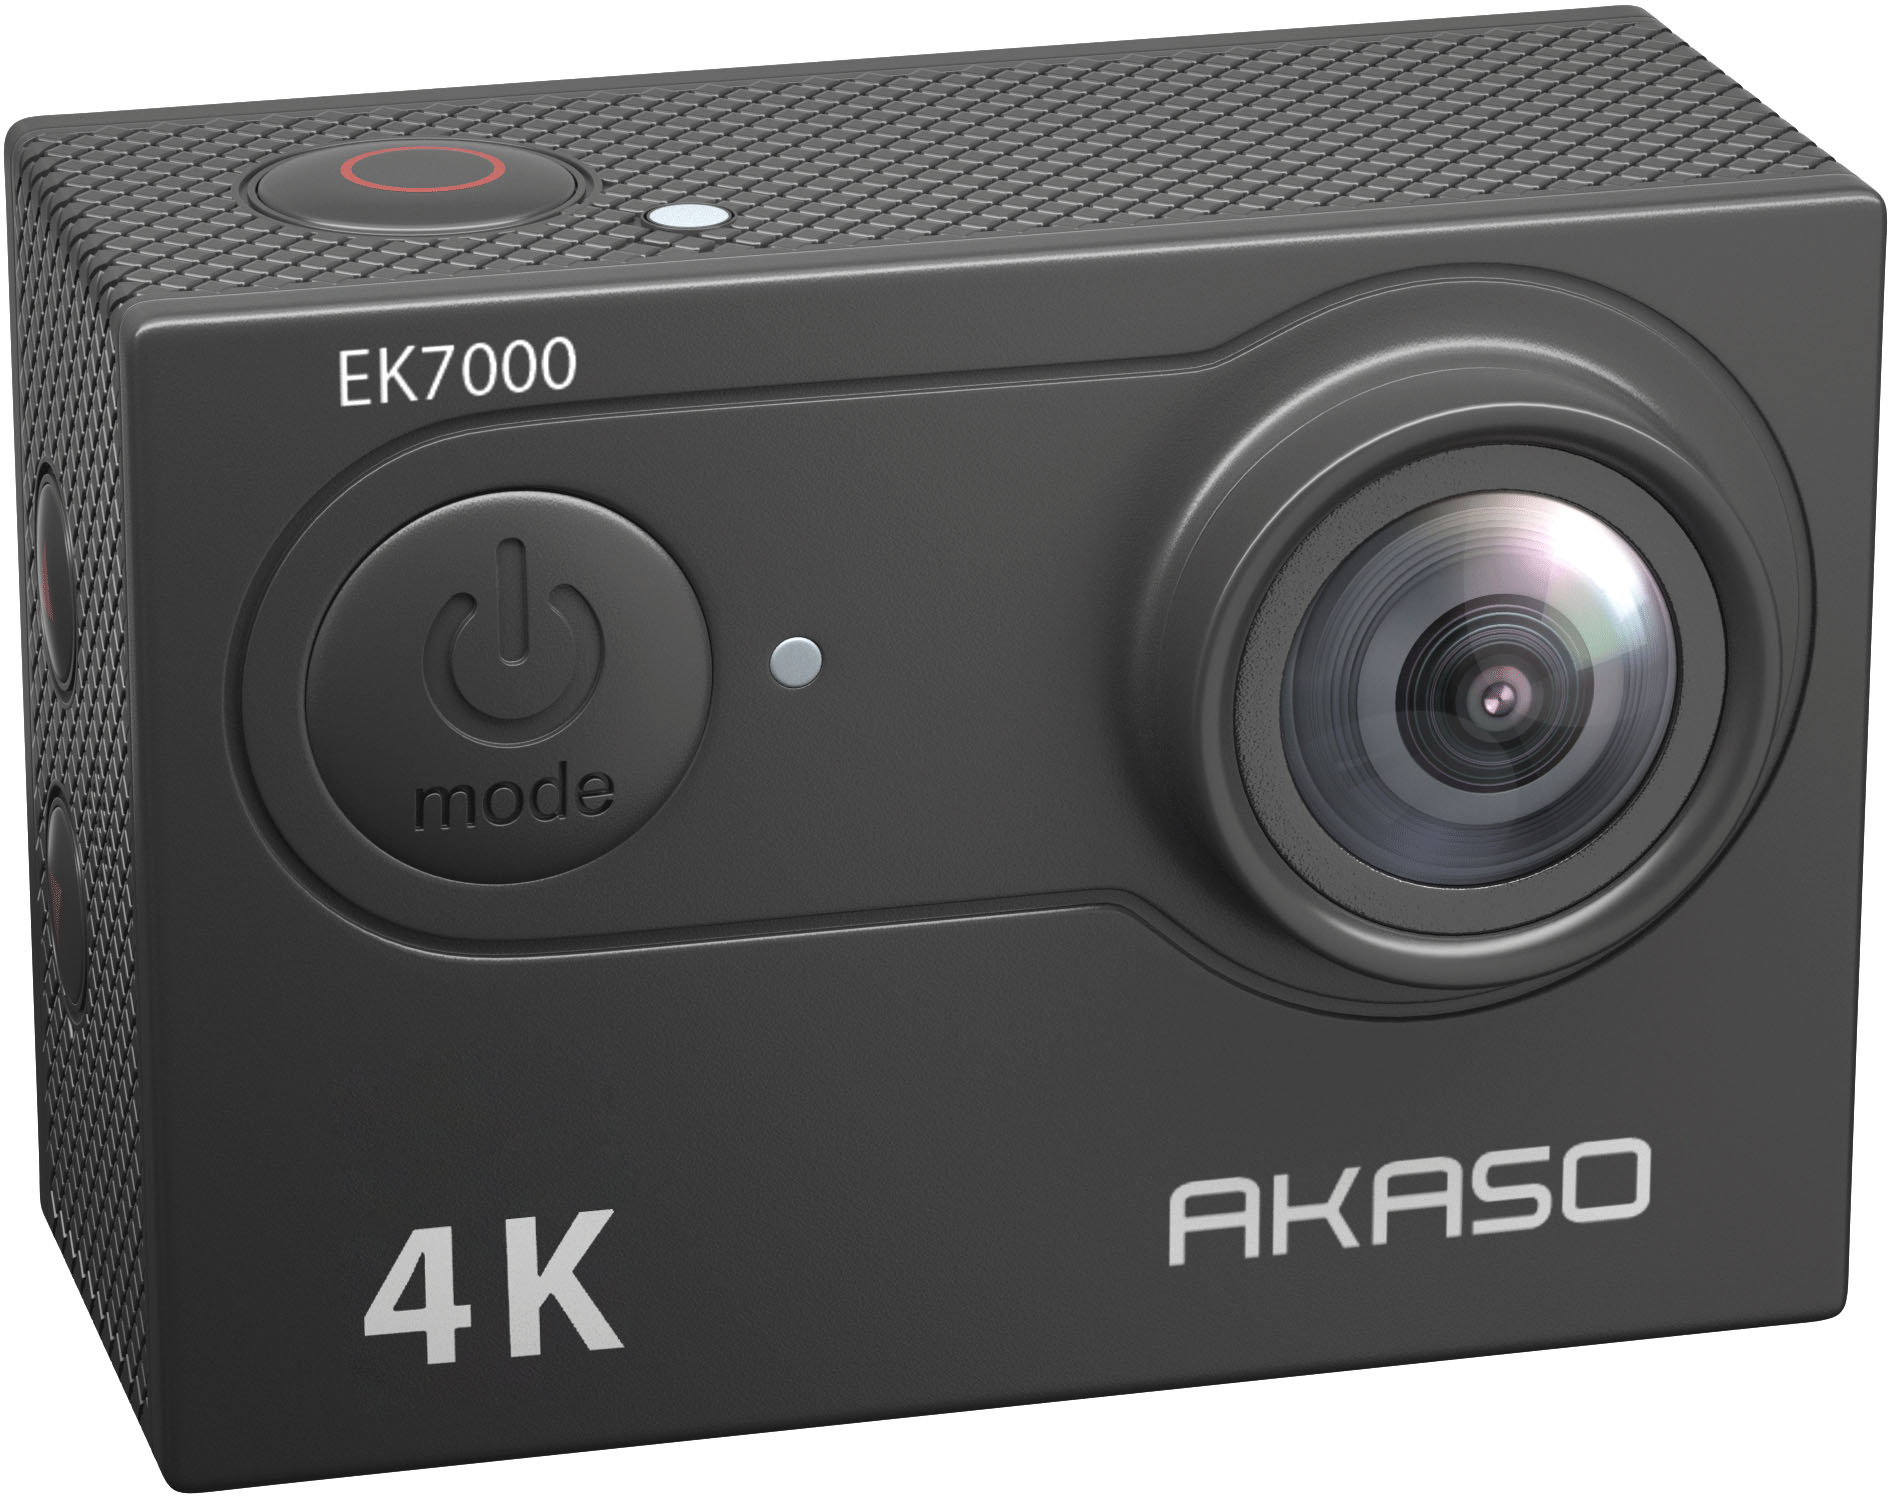 AKASO EK7000 Pro 4K action camera Announced - Camera Jabber